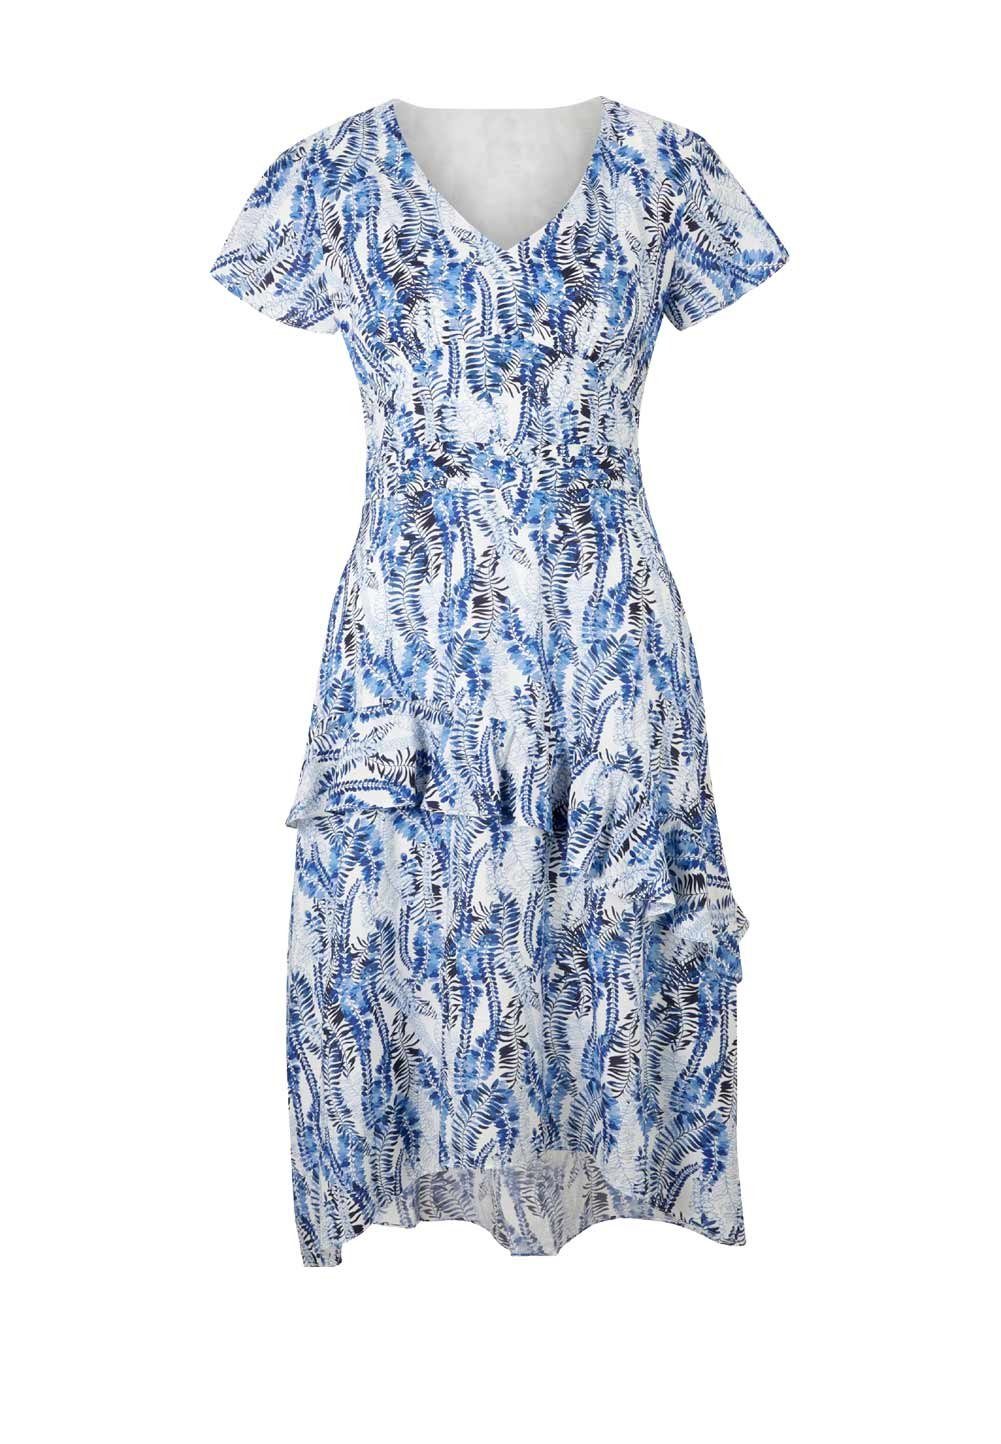 Ashley Brooke Volants, Designer-Seidenkleid BROOKE heine ASHLEY Shirtkleid weiß-blau m. Damen by